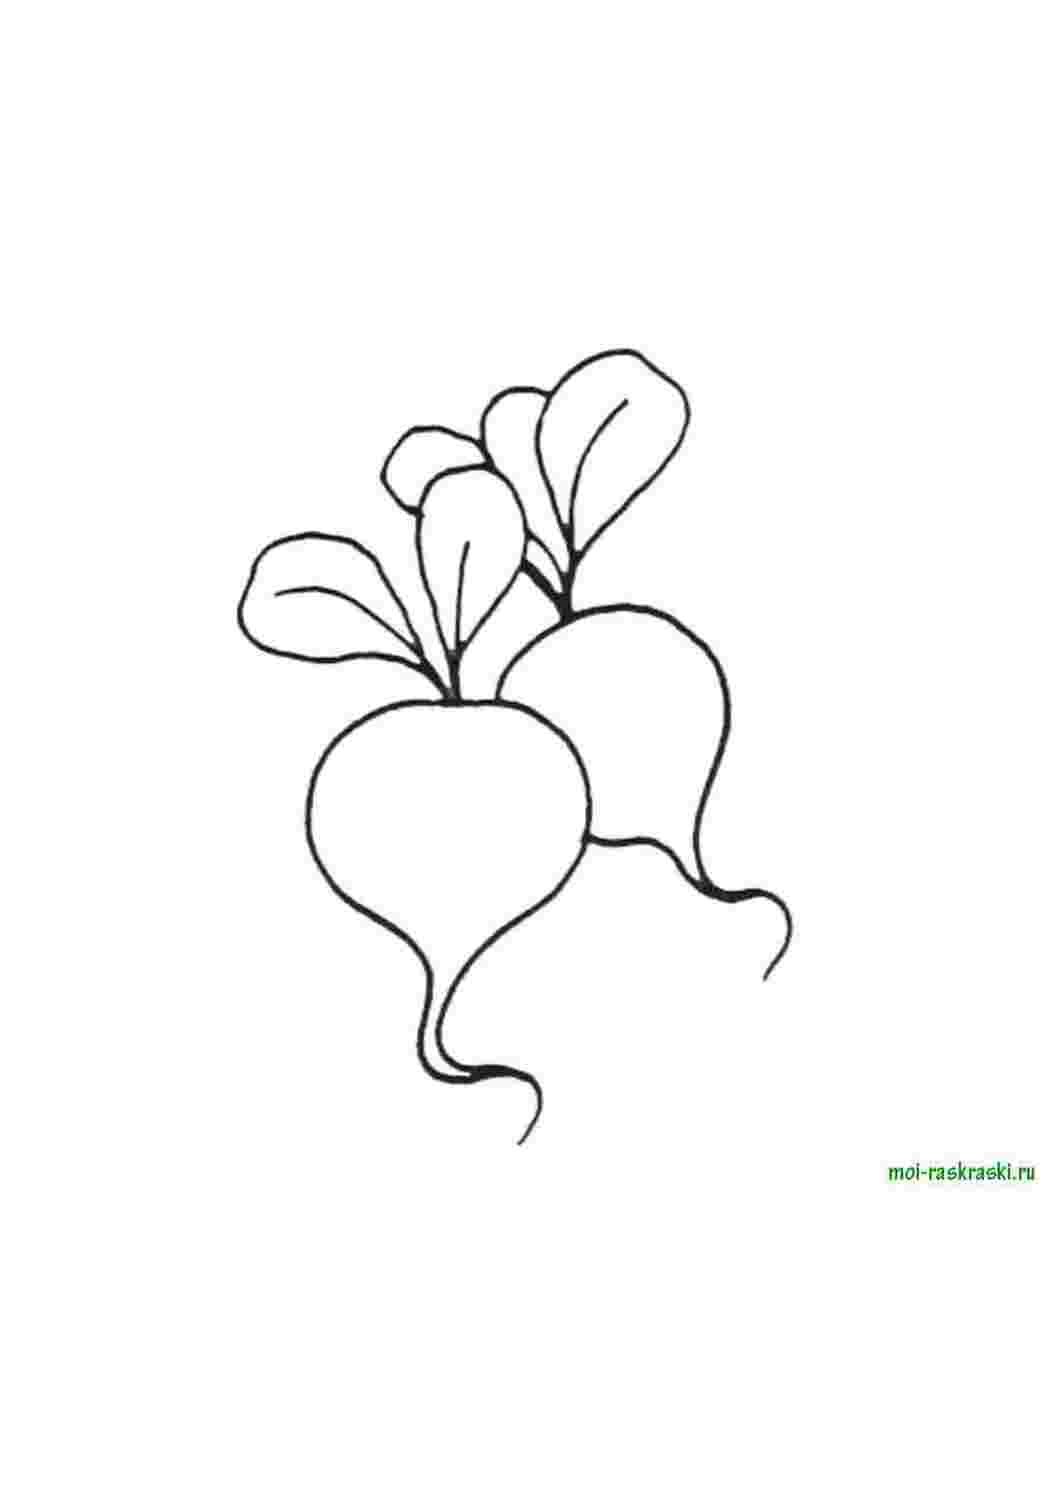 Раскраска овощи редис